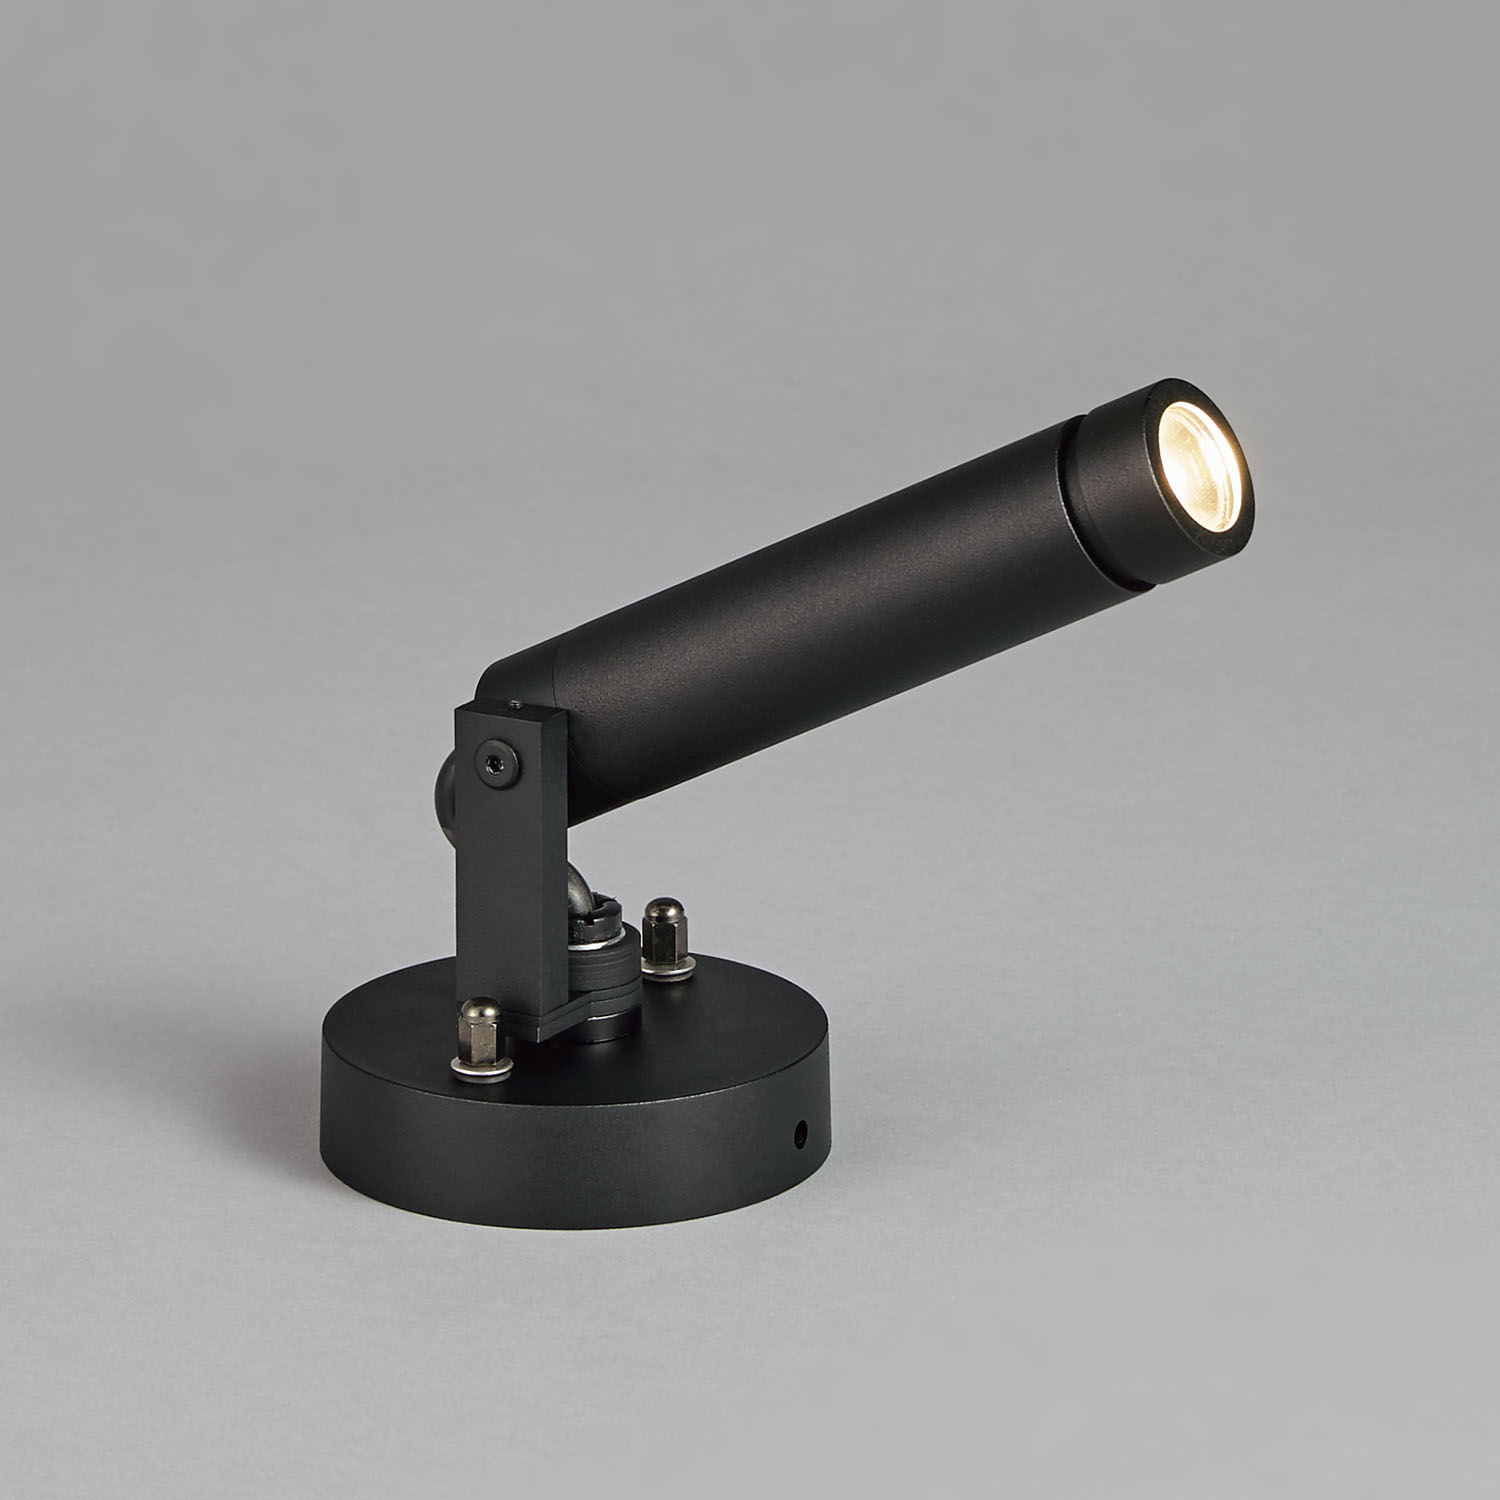 山田照明 山田照明 Compact Spot Neo（コンパクト・スポット・ネオ） 屋外用スポットライト 黒色 LED 電球色 調光 64度 AD- 3146-N